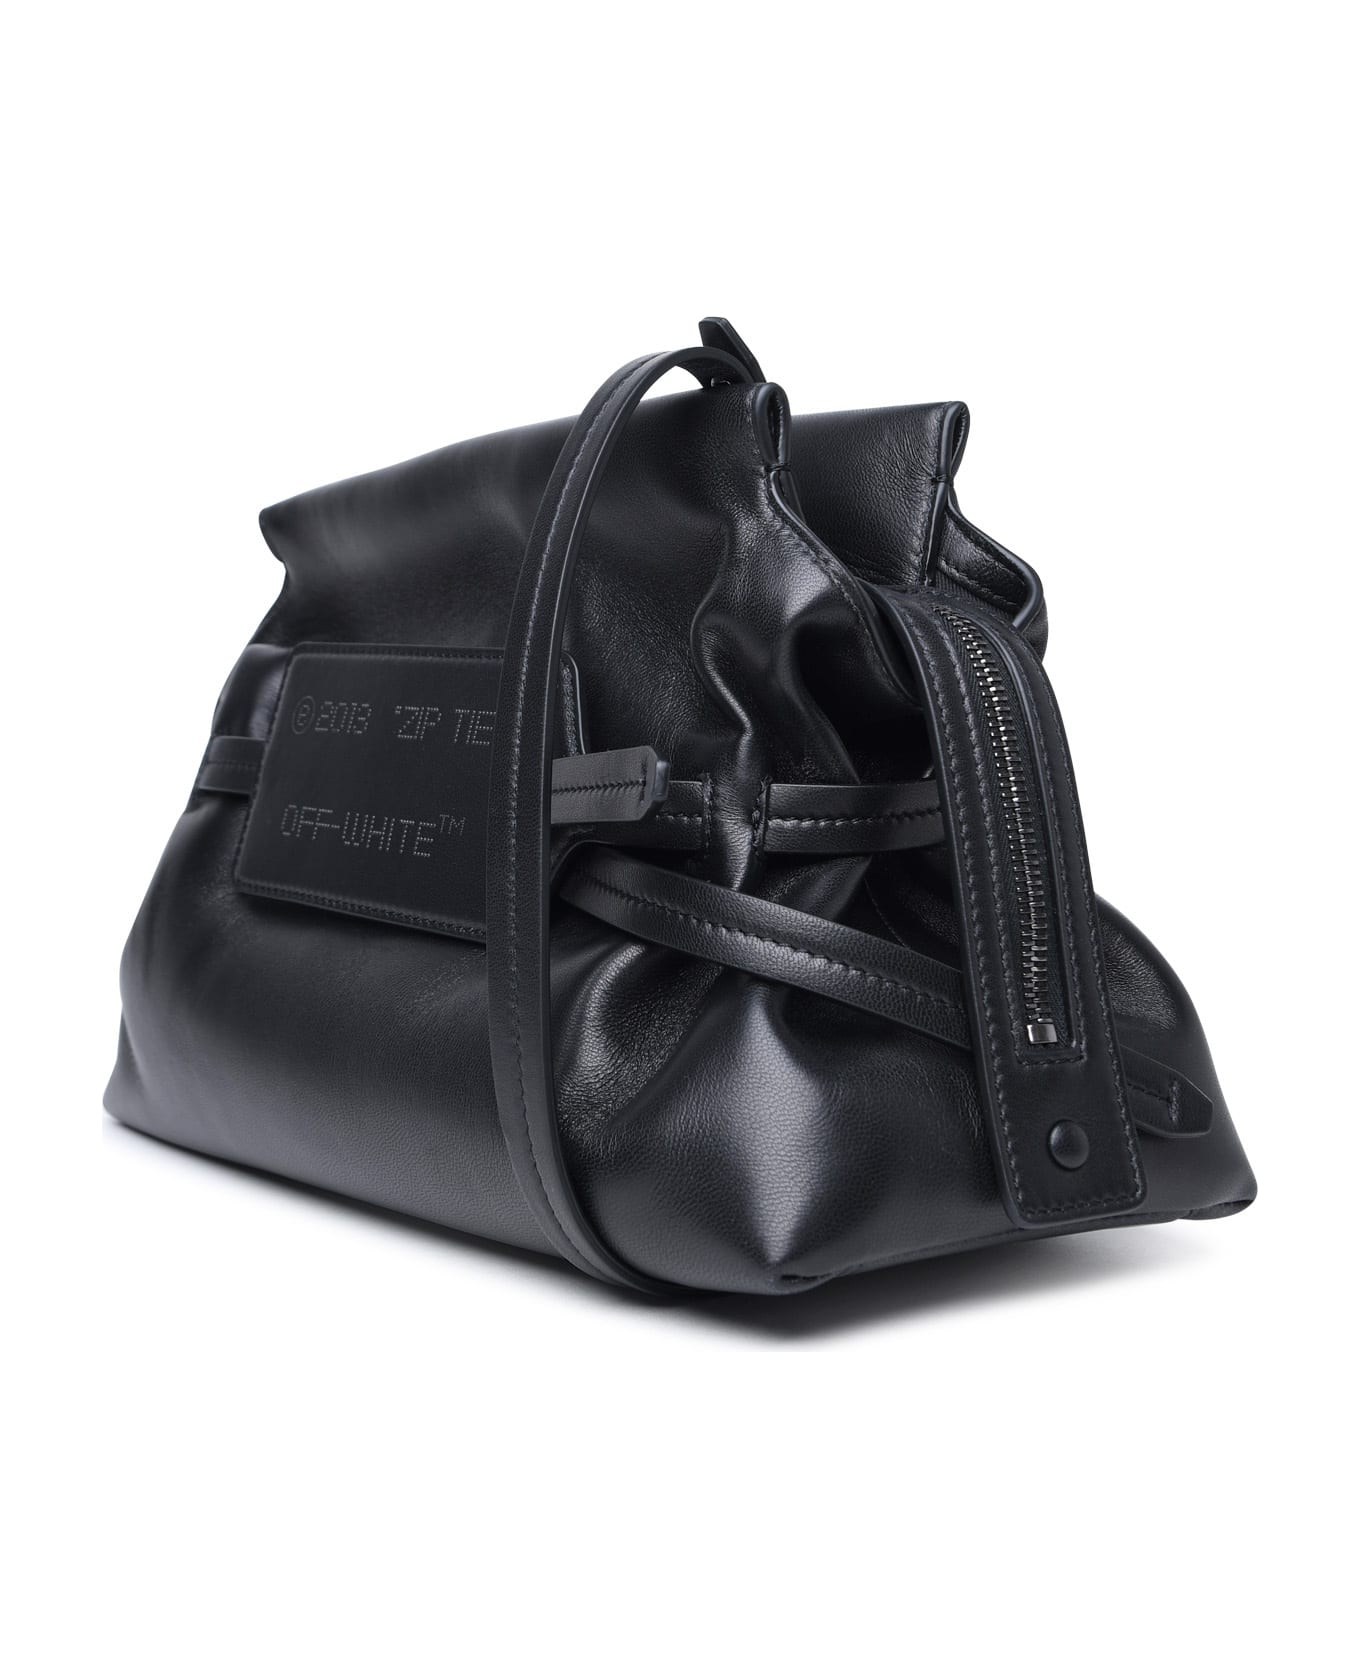 Off-White Leather Shoulder Bag - Black